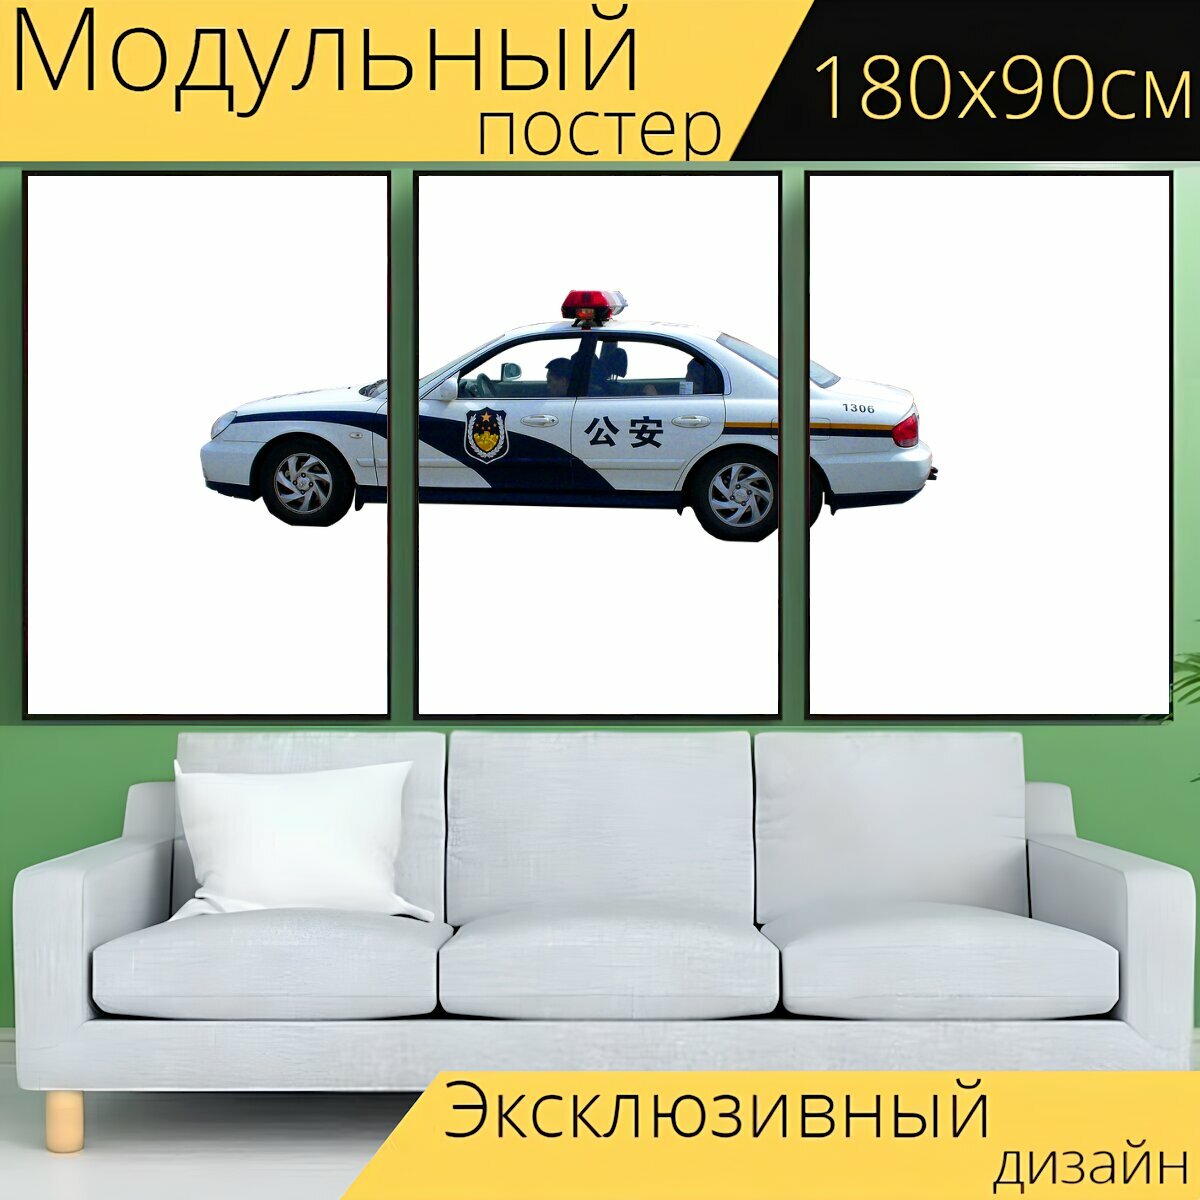 Модульный постер "Транспорт, транспортное средство, автомобиль" 180 x 90 см. для интерьера